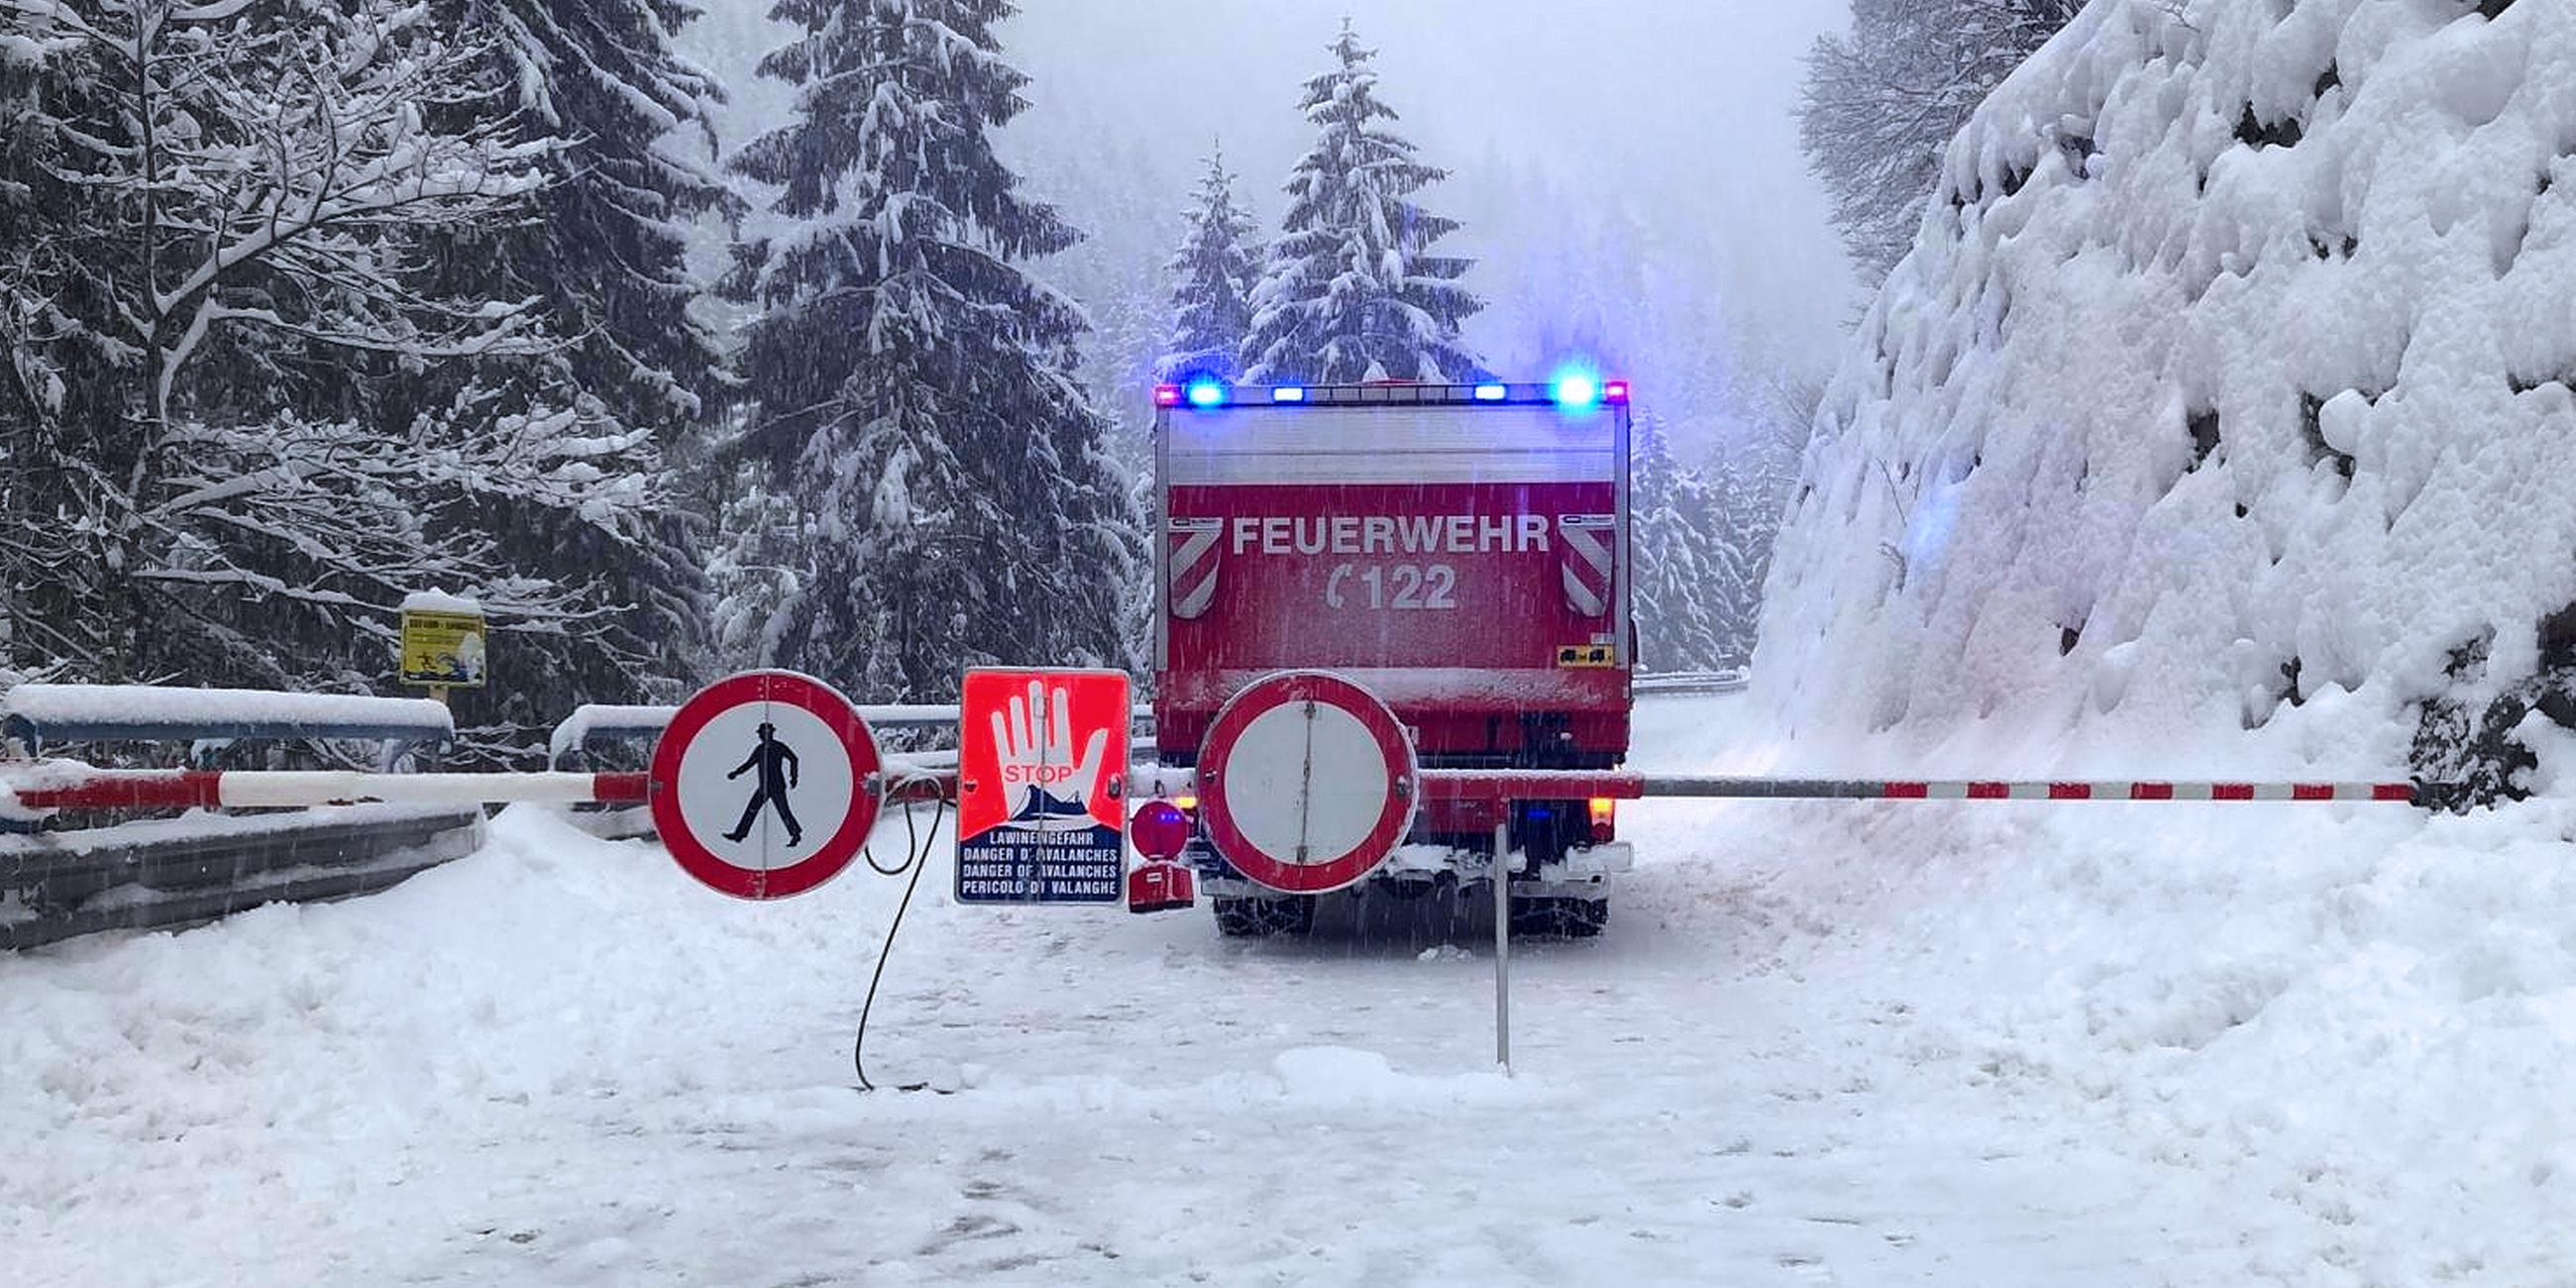 Archiv: Straßensperre aufgrund der hohen Lawinengefahr am 05.01.2019, in Tirol, Österreich